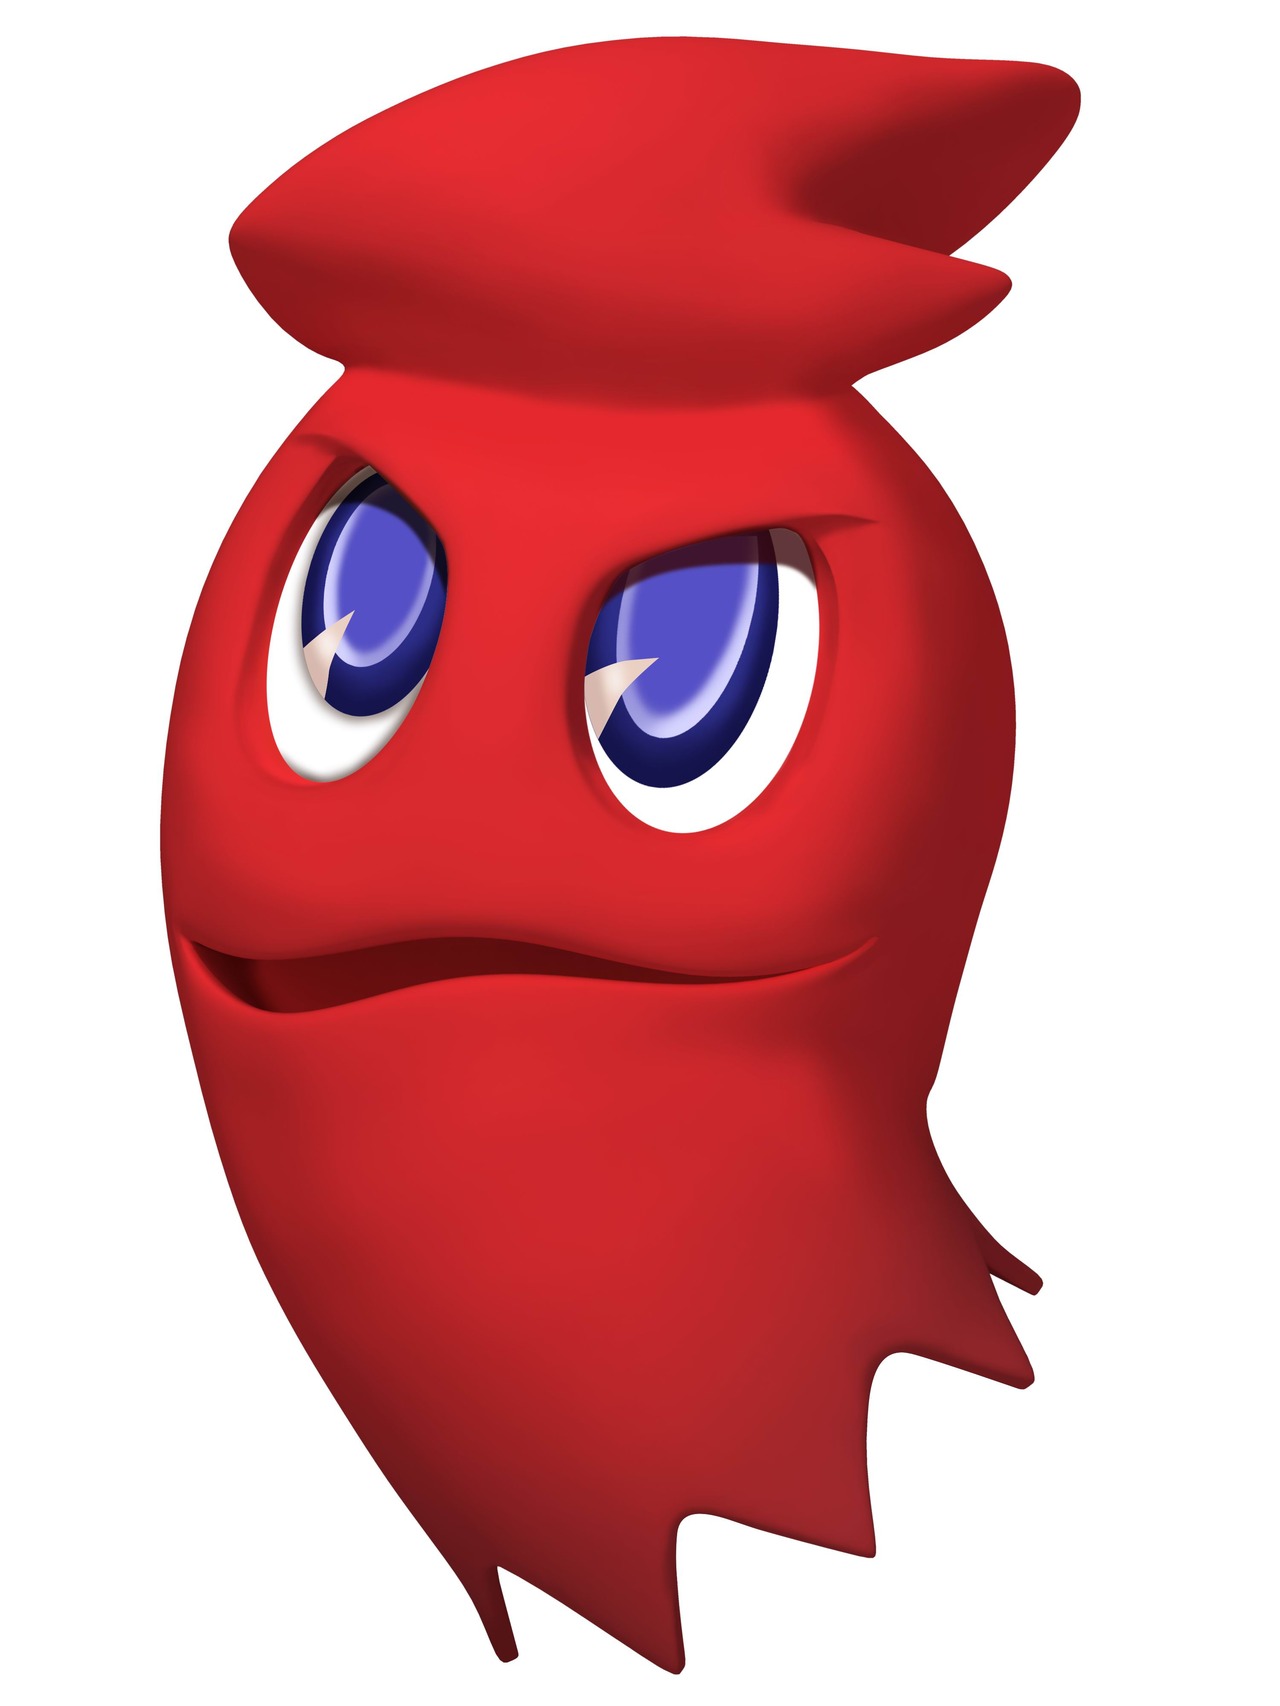 Blinky | Pac-Man Wiki | Fandom powered by Wikia